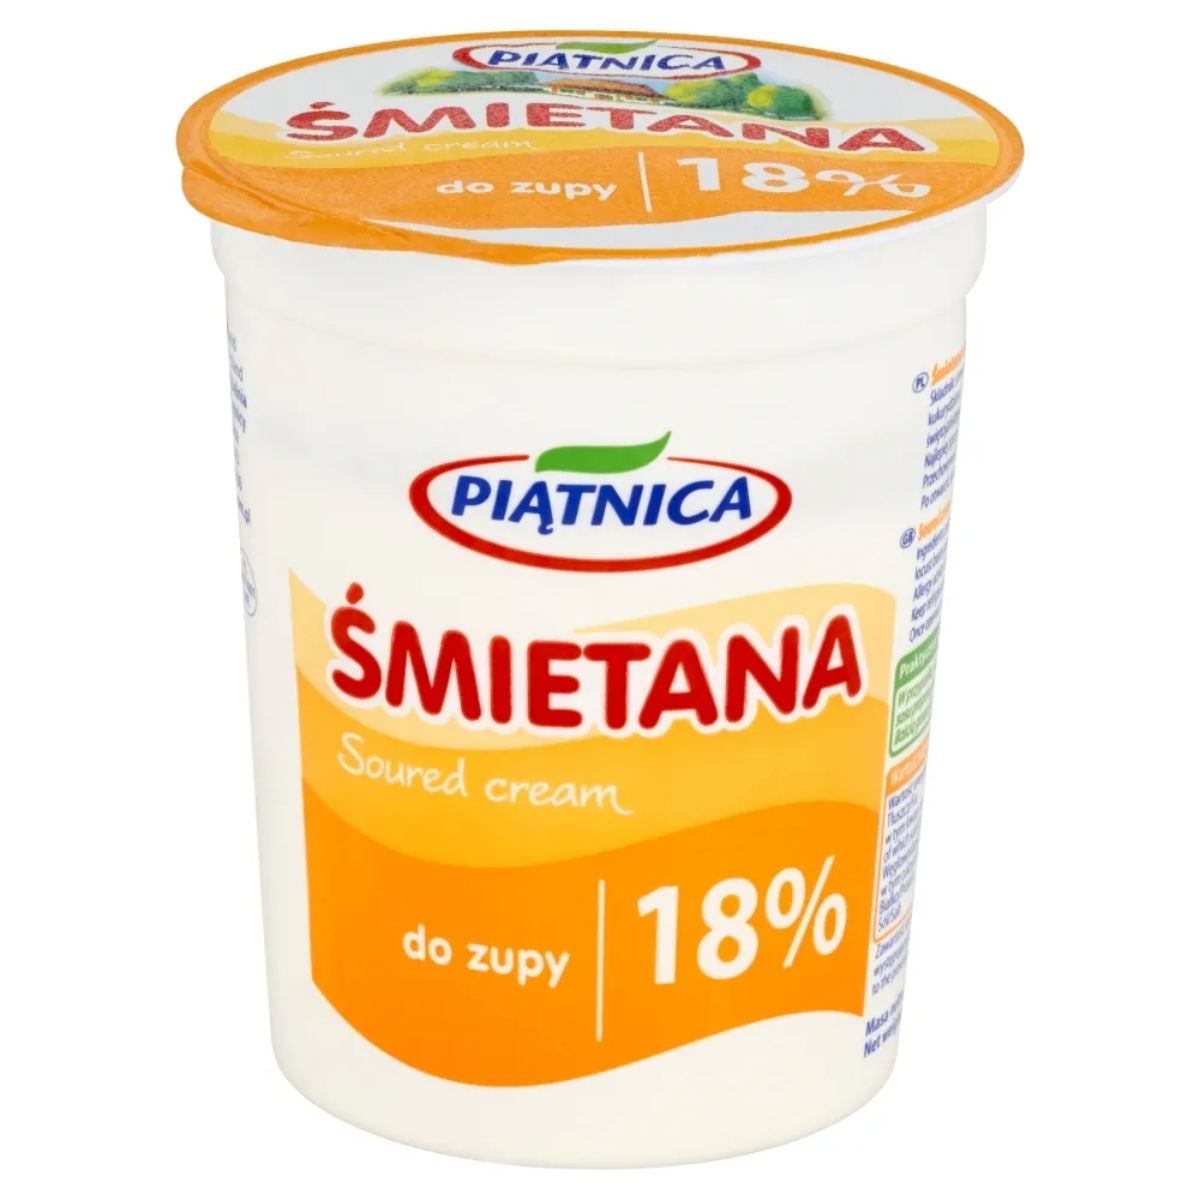 A tub of Piatnica - Smietana Sour Cream - 400g on a white background.